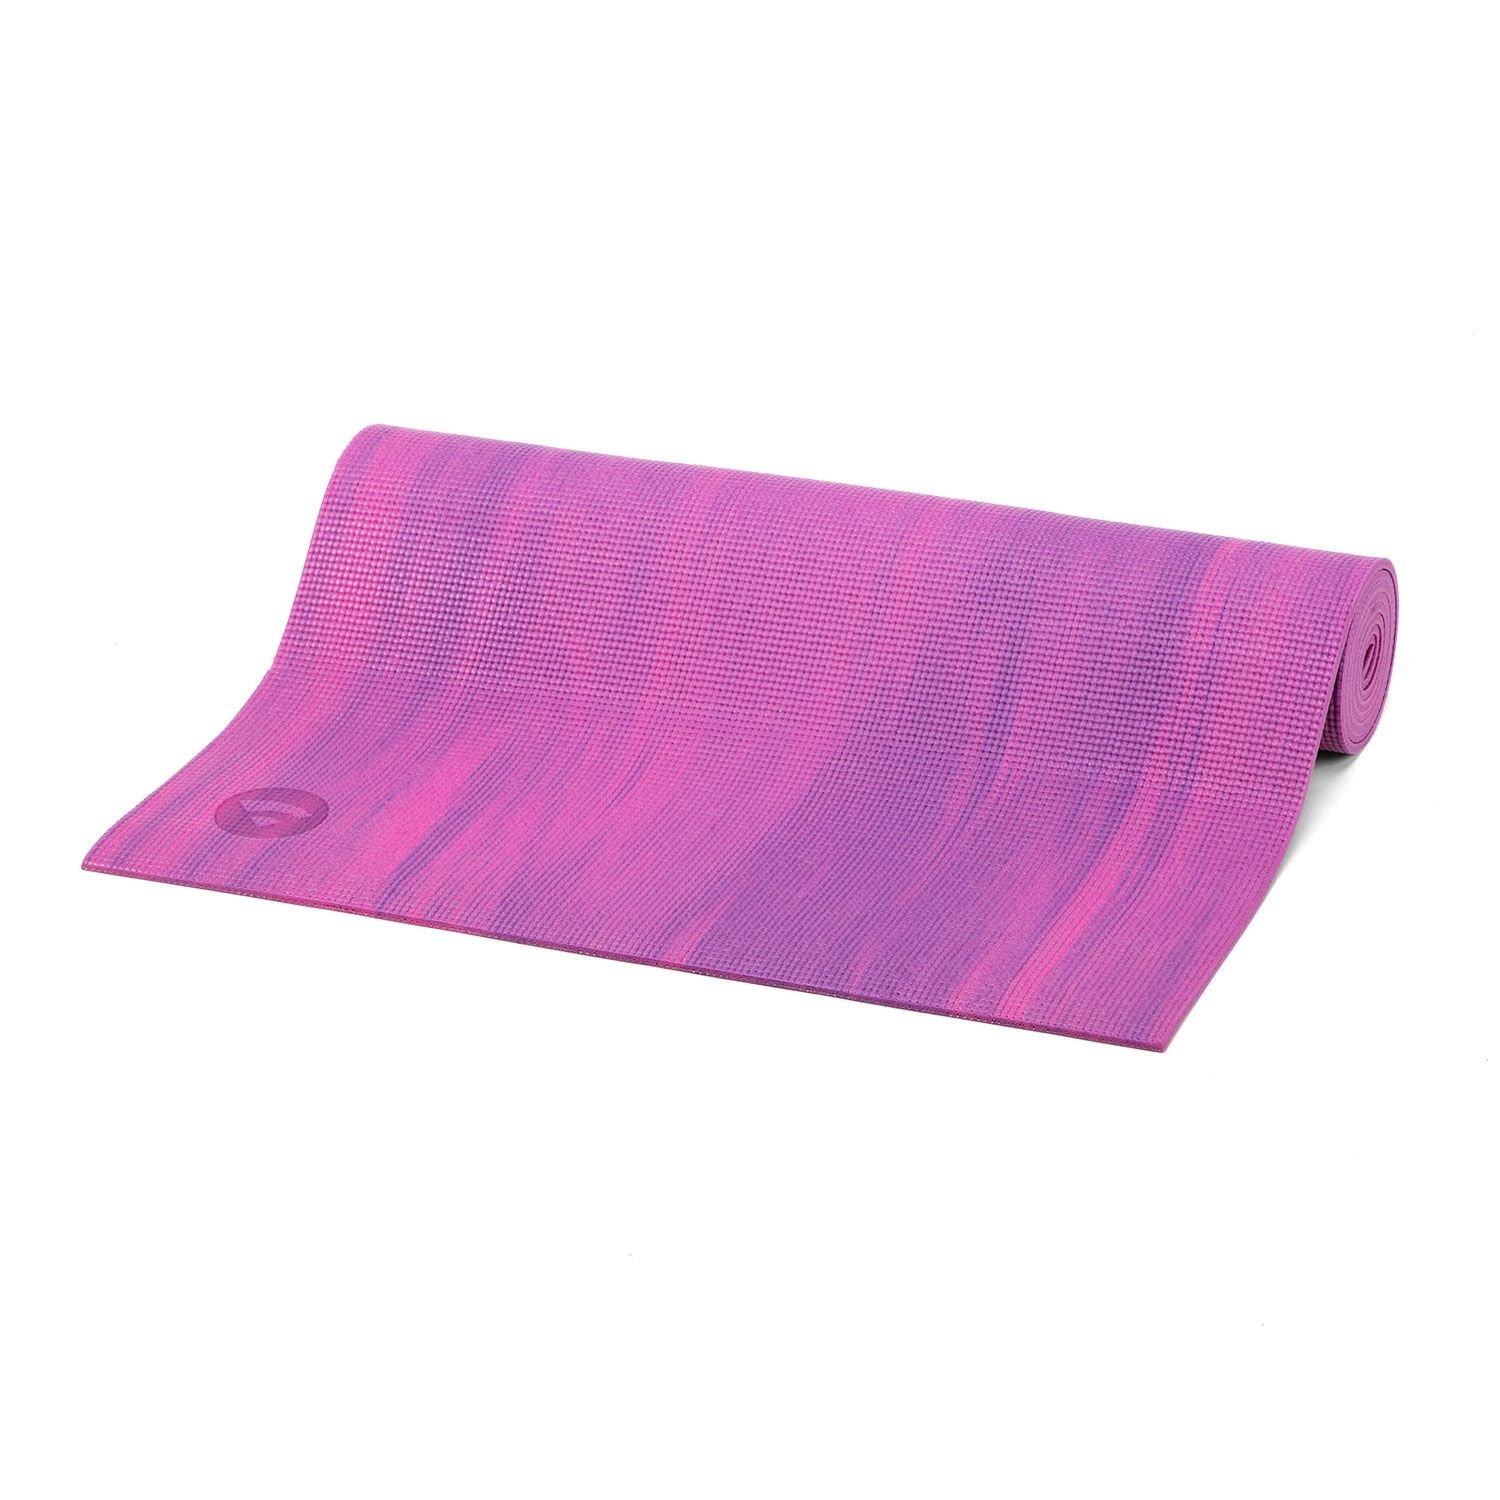 Yogamatte Ganges, PVC pink/lila marmoriert 940-Lp